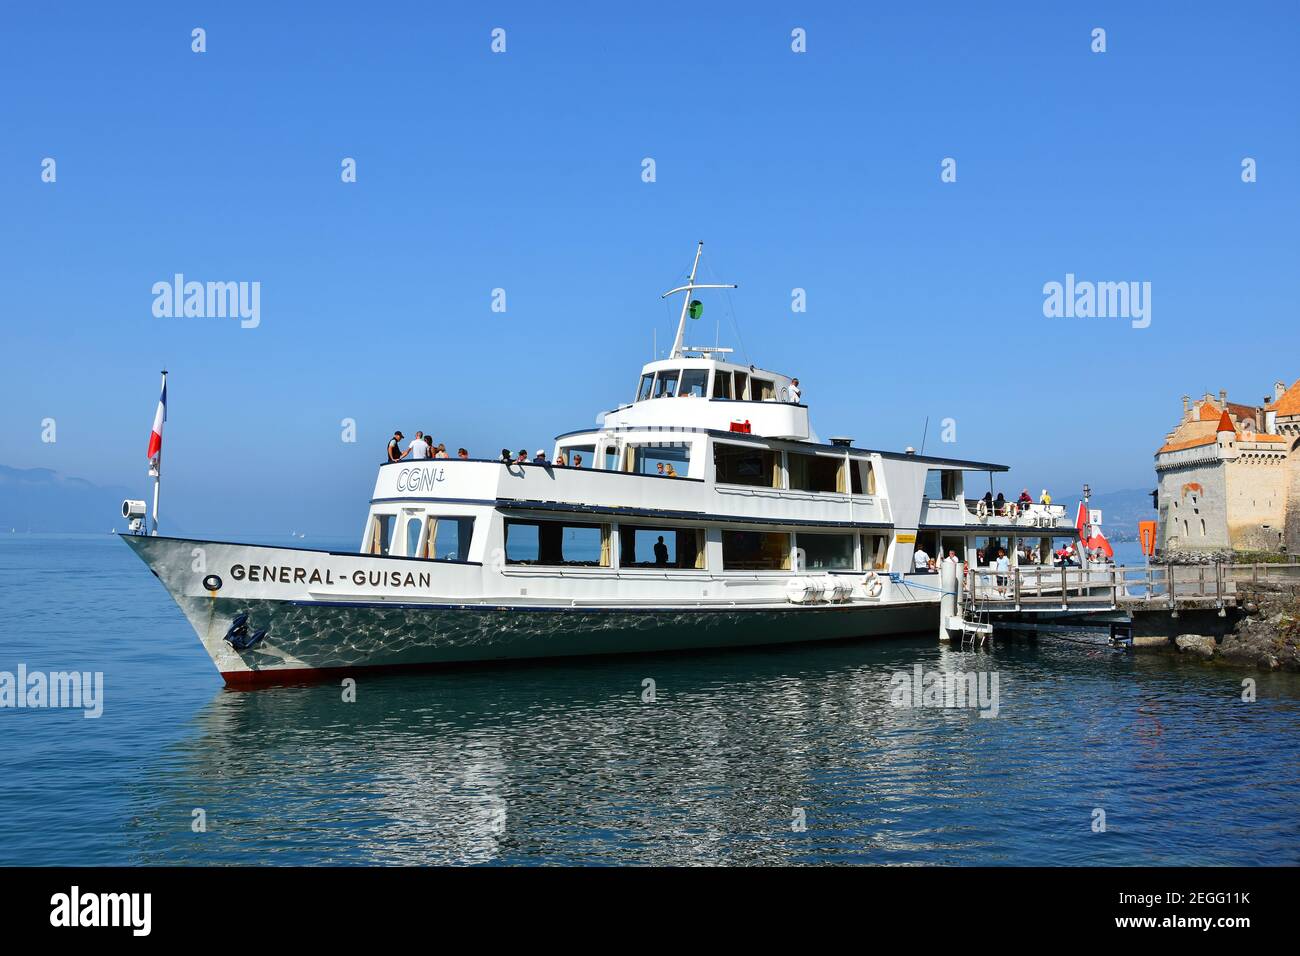 Montreux, Suisse- 24 août 2019. Croisière avec bateau à vapeur à aubes sur le lac Léman (Genève), près de Montreux Riviera, Suisse Banque D'Images